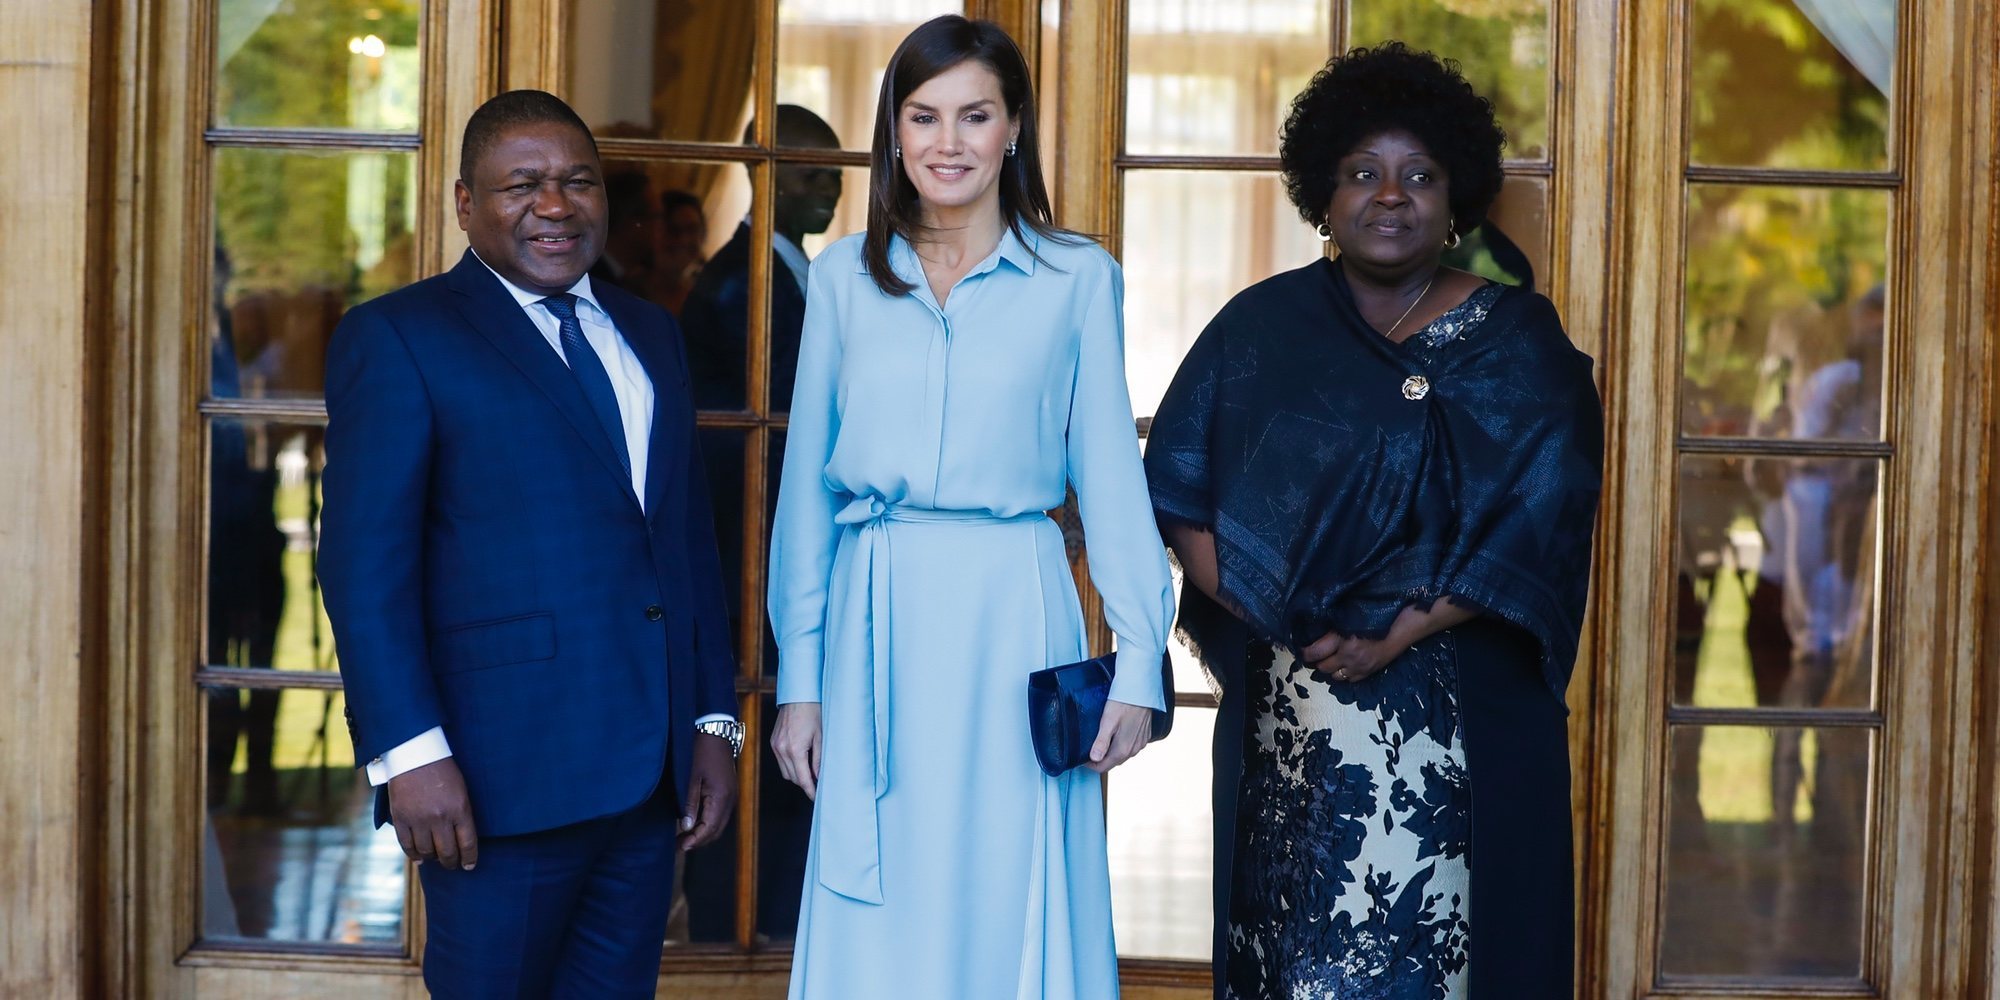 La reunión de cooperación de la Reina Letizia con el Presidente de Mozambique y su mujer